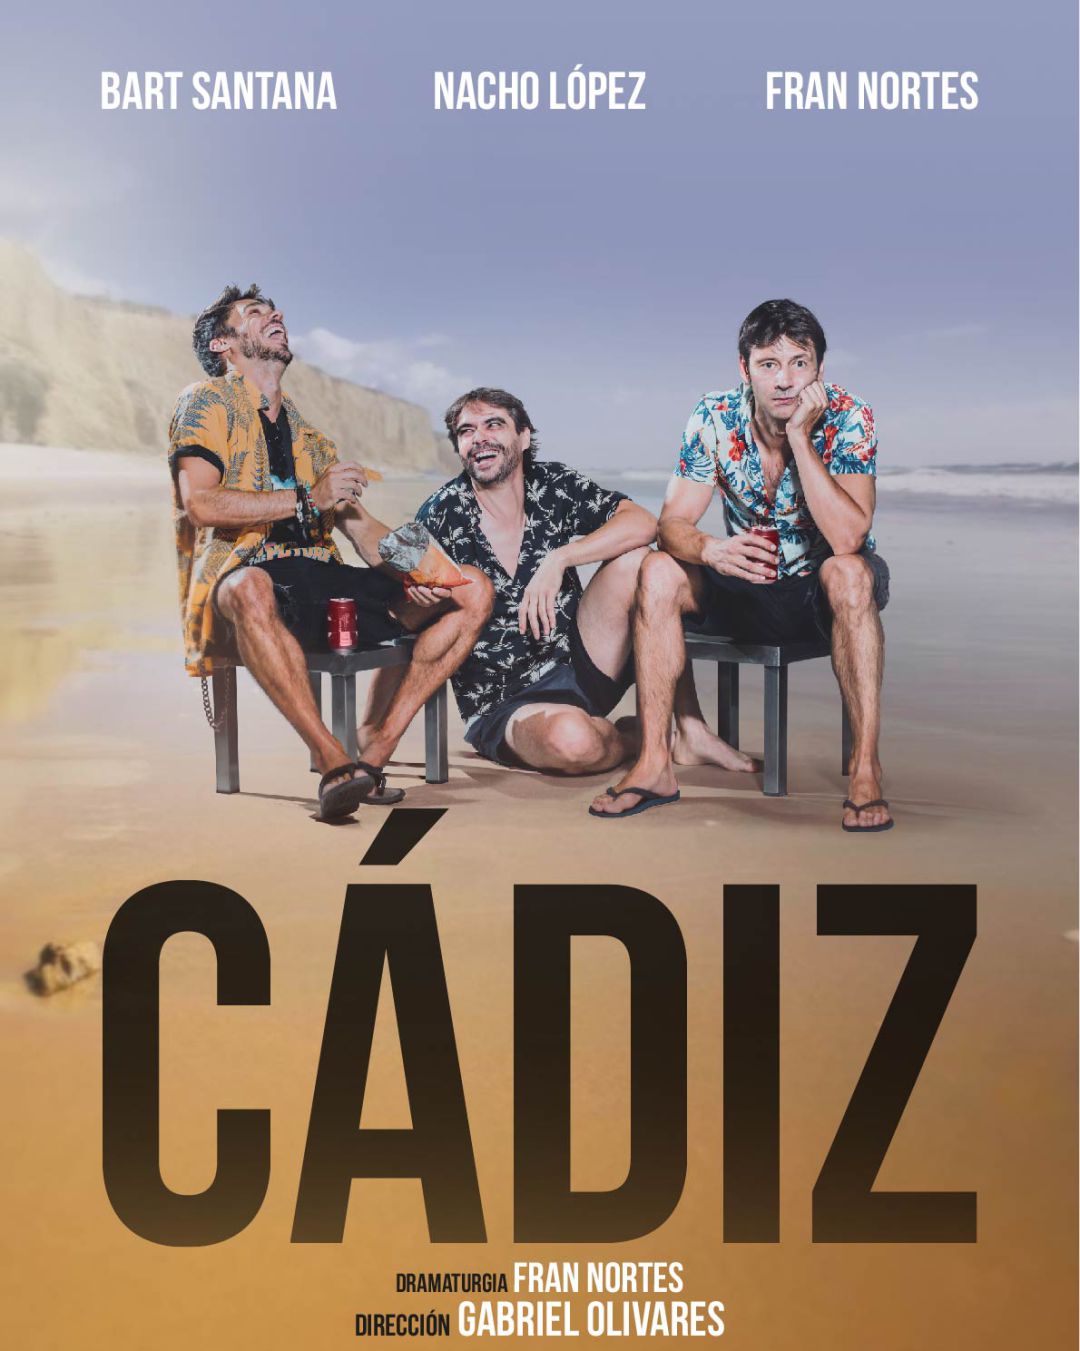 Teatro Lara con la obra 'Cádiz'